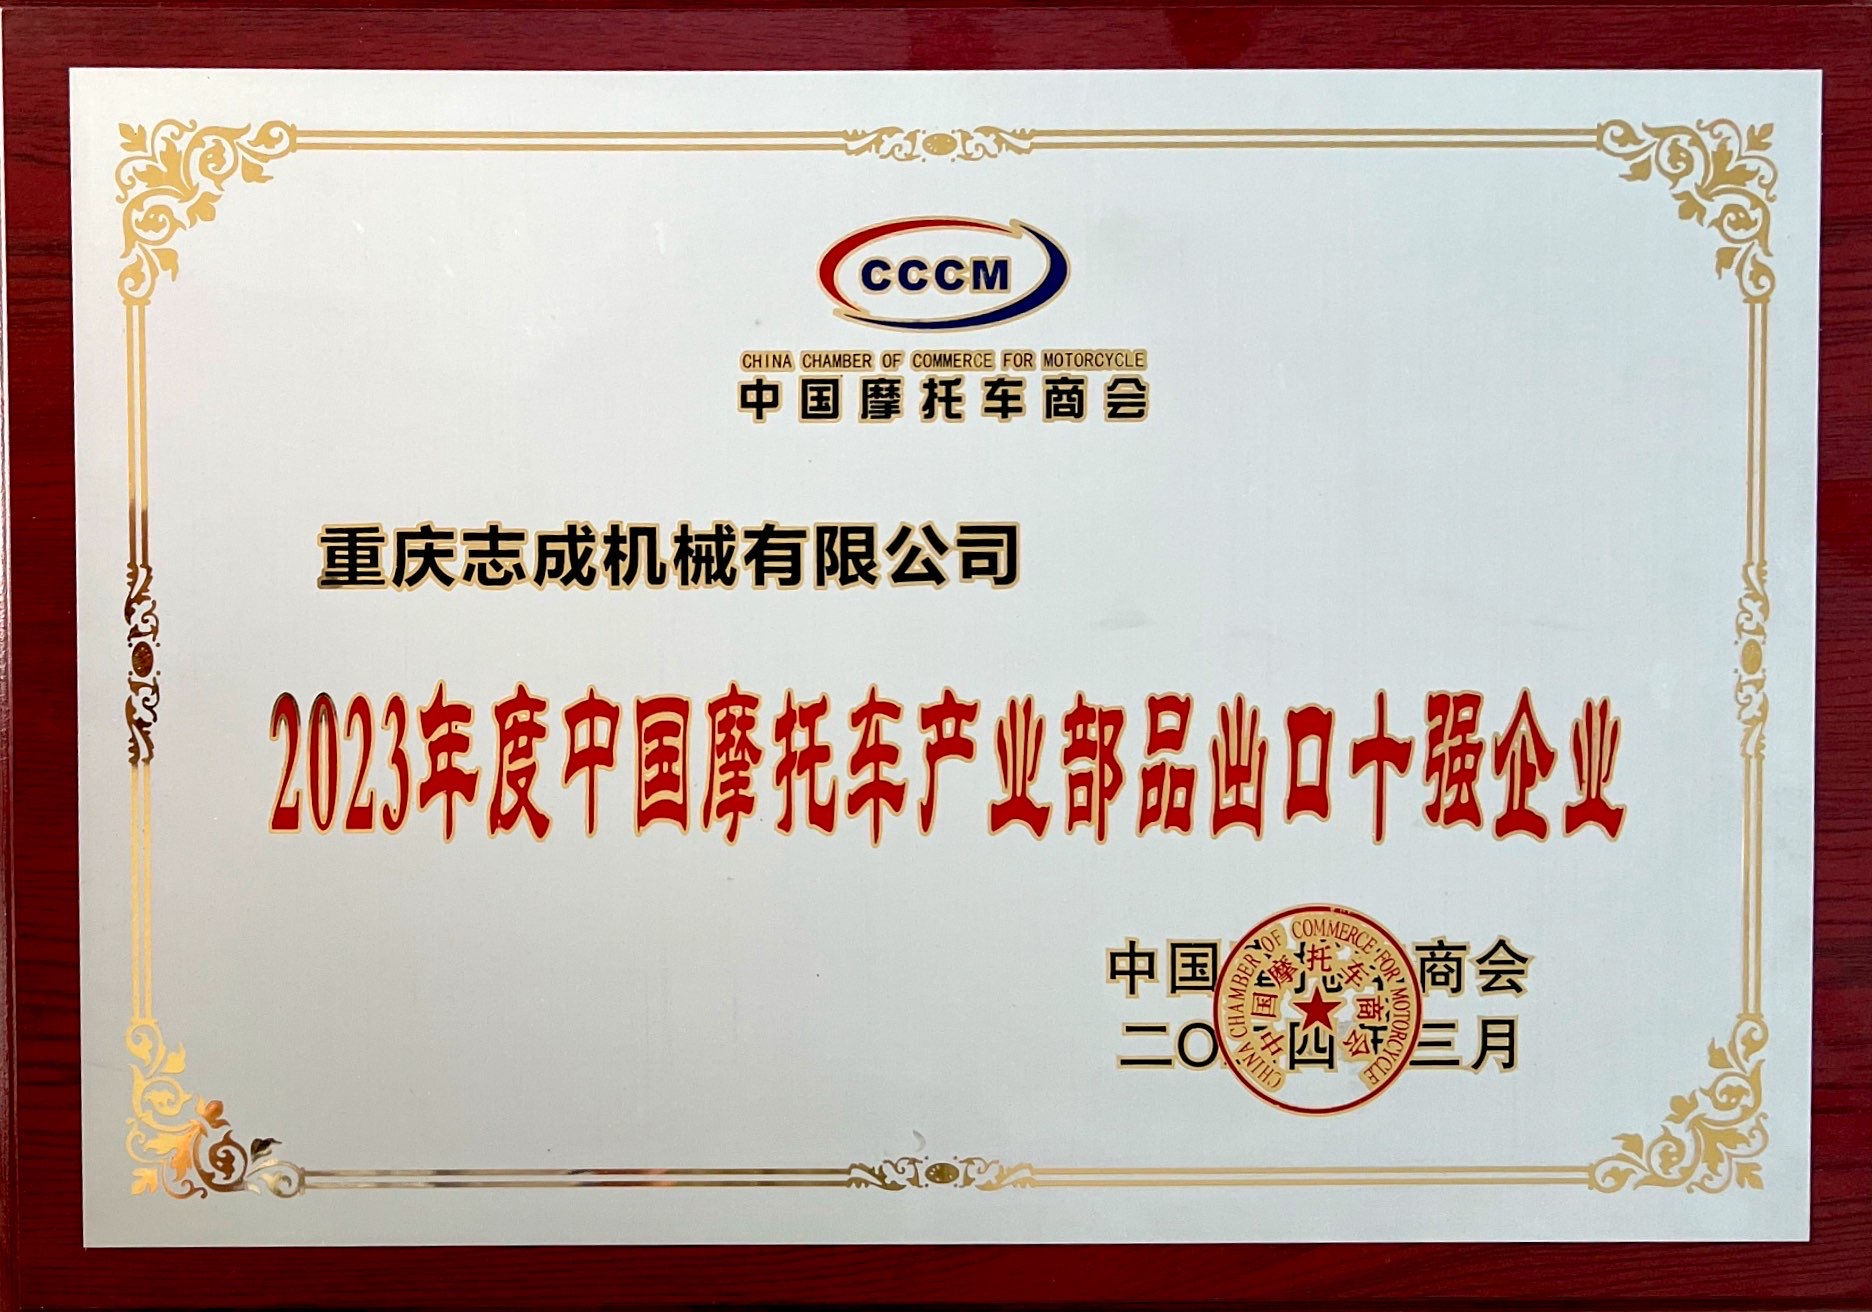 熱烈祝賀重慶志成機械有限公司榮獲CCCM中國摩托車商會  “2023年度中國摩托車產業部品出口十強工業”